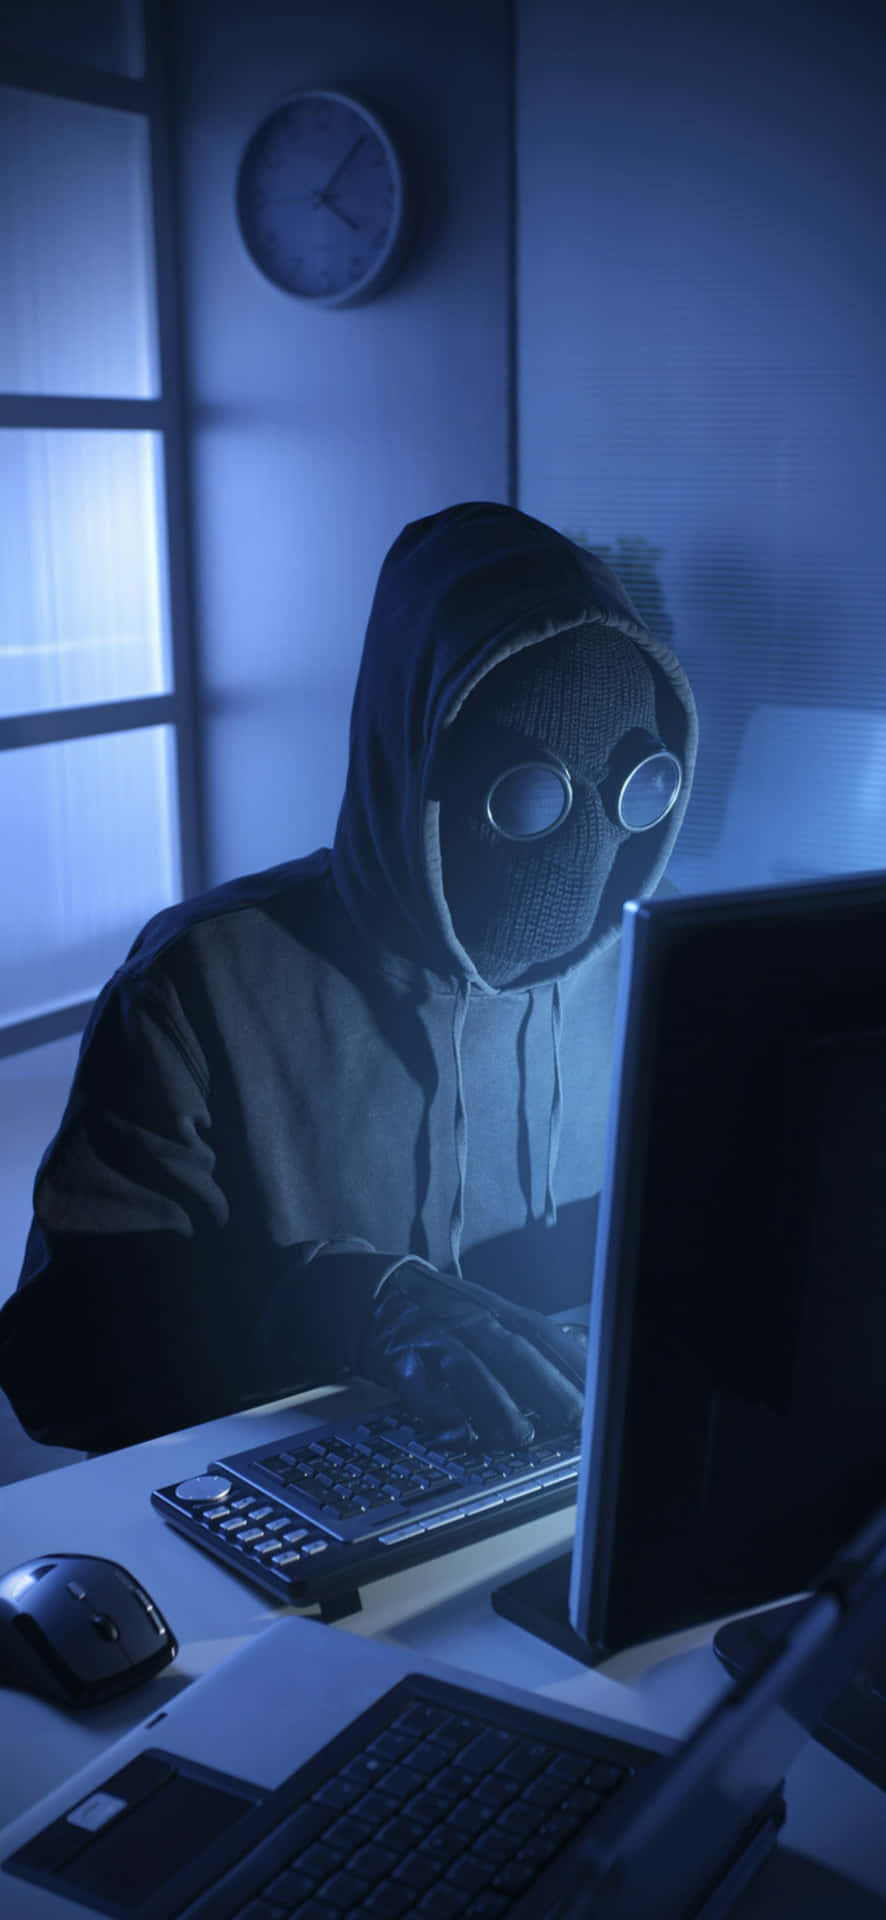 Hackerin Dark Roomwith Computer.jpg Wallpaper